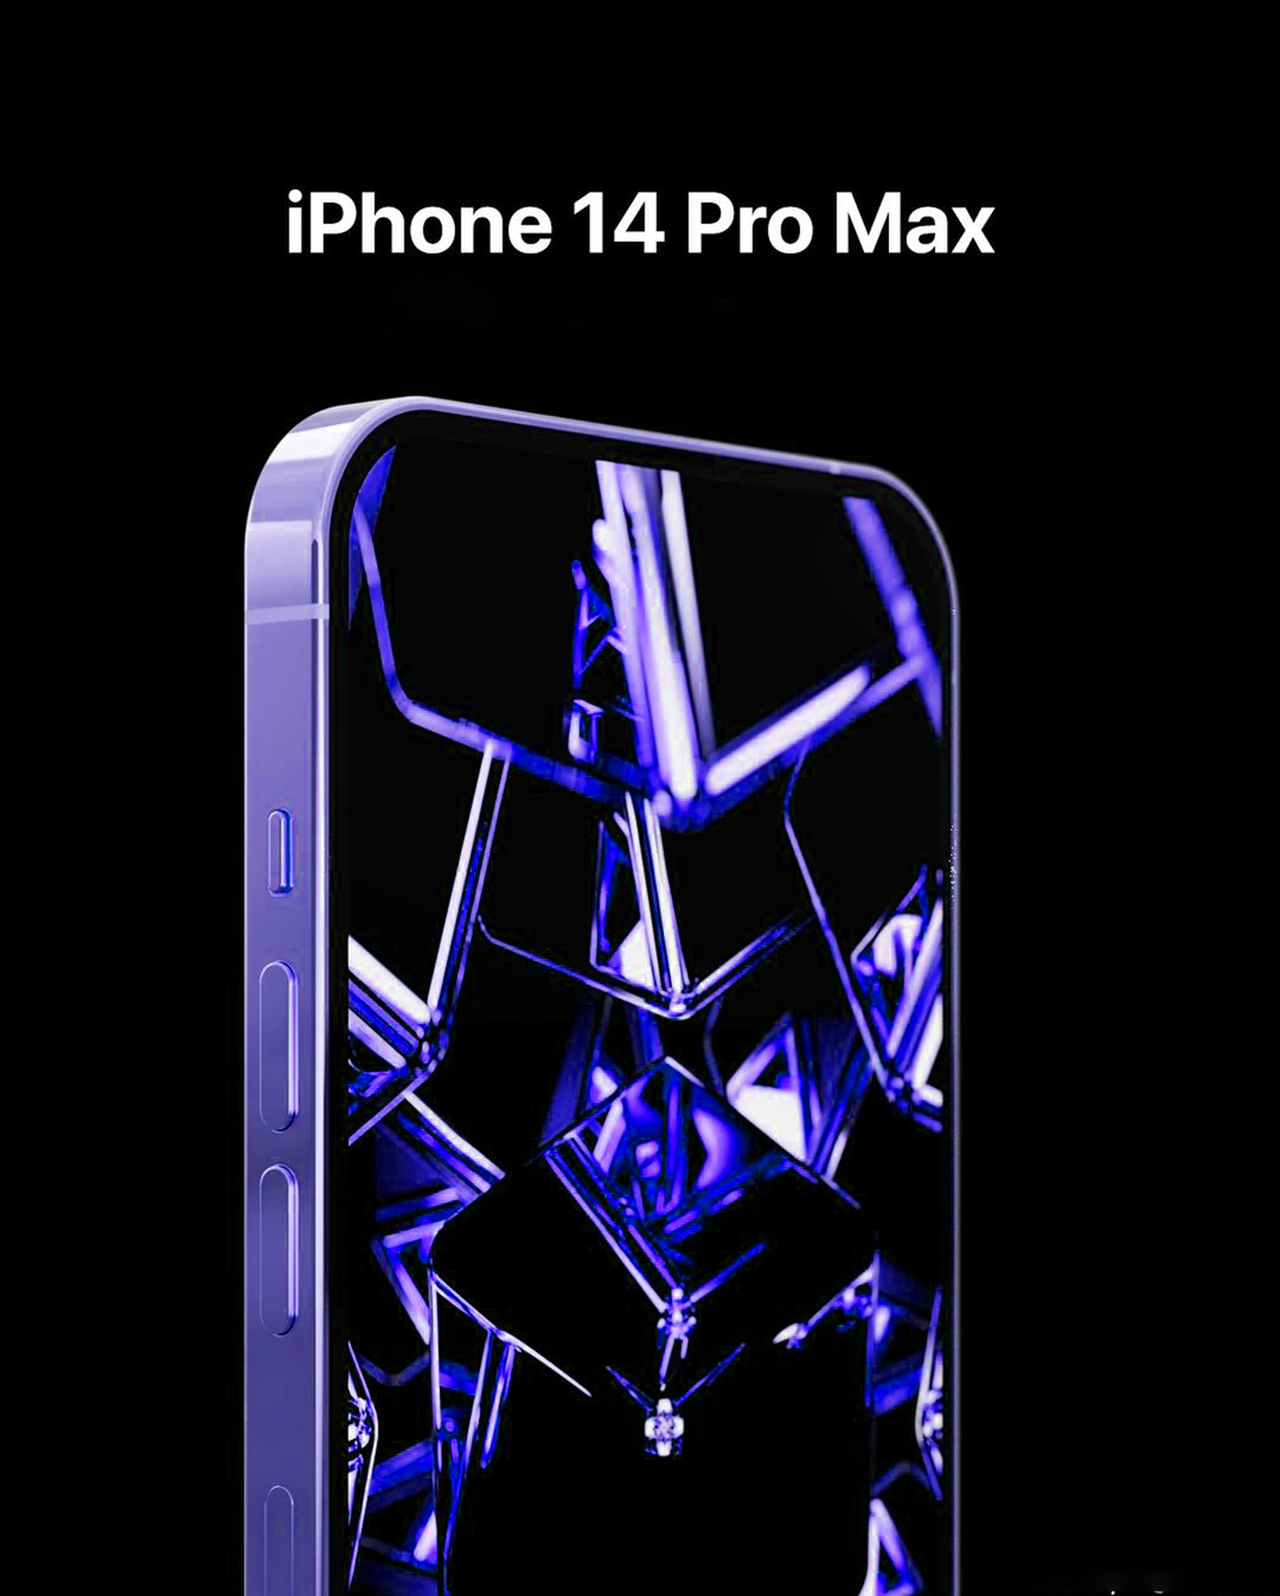 iPhone 14 Pro Max màu Xanh Neon sẽ mang lại cho bạn một trải nghiệm hoàn toàn khác biệt trong việc trang trí cho chiếc điện thoại của mình. Với sắc xanh neon đậm chất hiện đại, chiếc iPhone 14 Pro Max của bạn sẽ trở nên rực rỡ và thu hút hơn bao giờ hết. Hãy lựa chọn và tải ngay những bức hình nền iPhone 14 màu Xanh Neon để cảm nhận sự khác biệt.